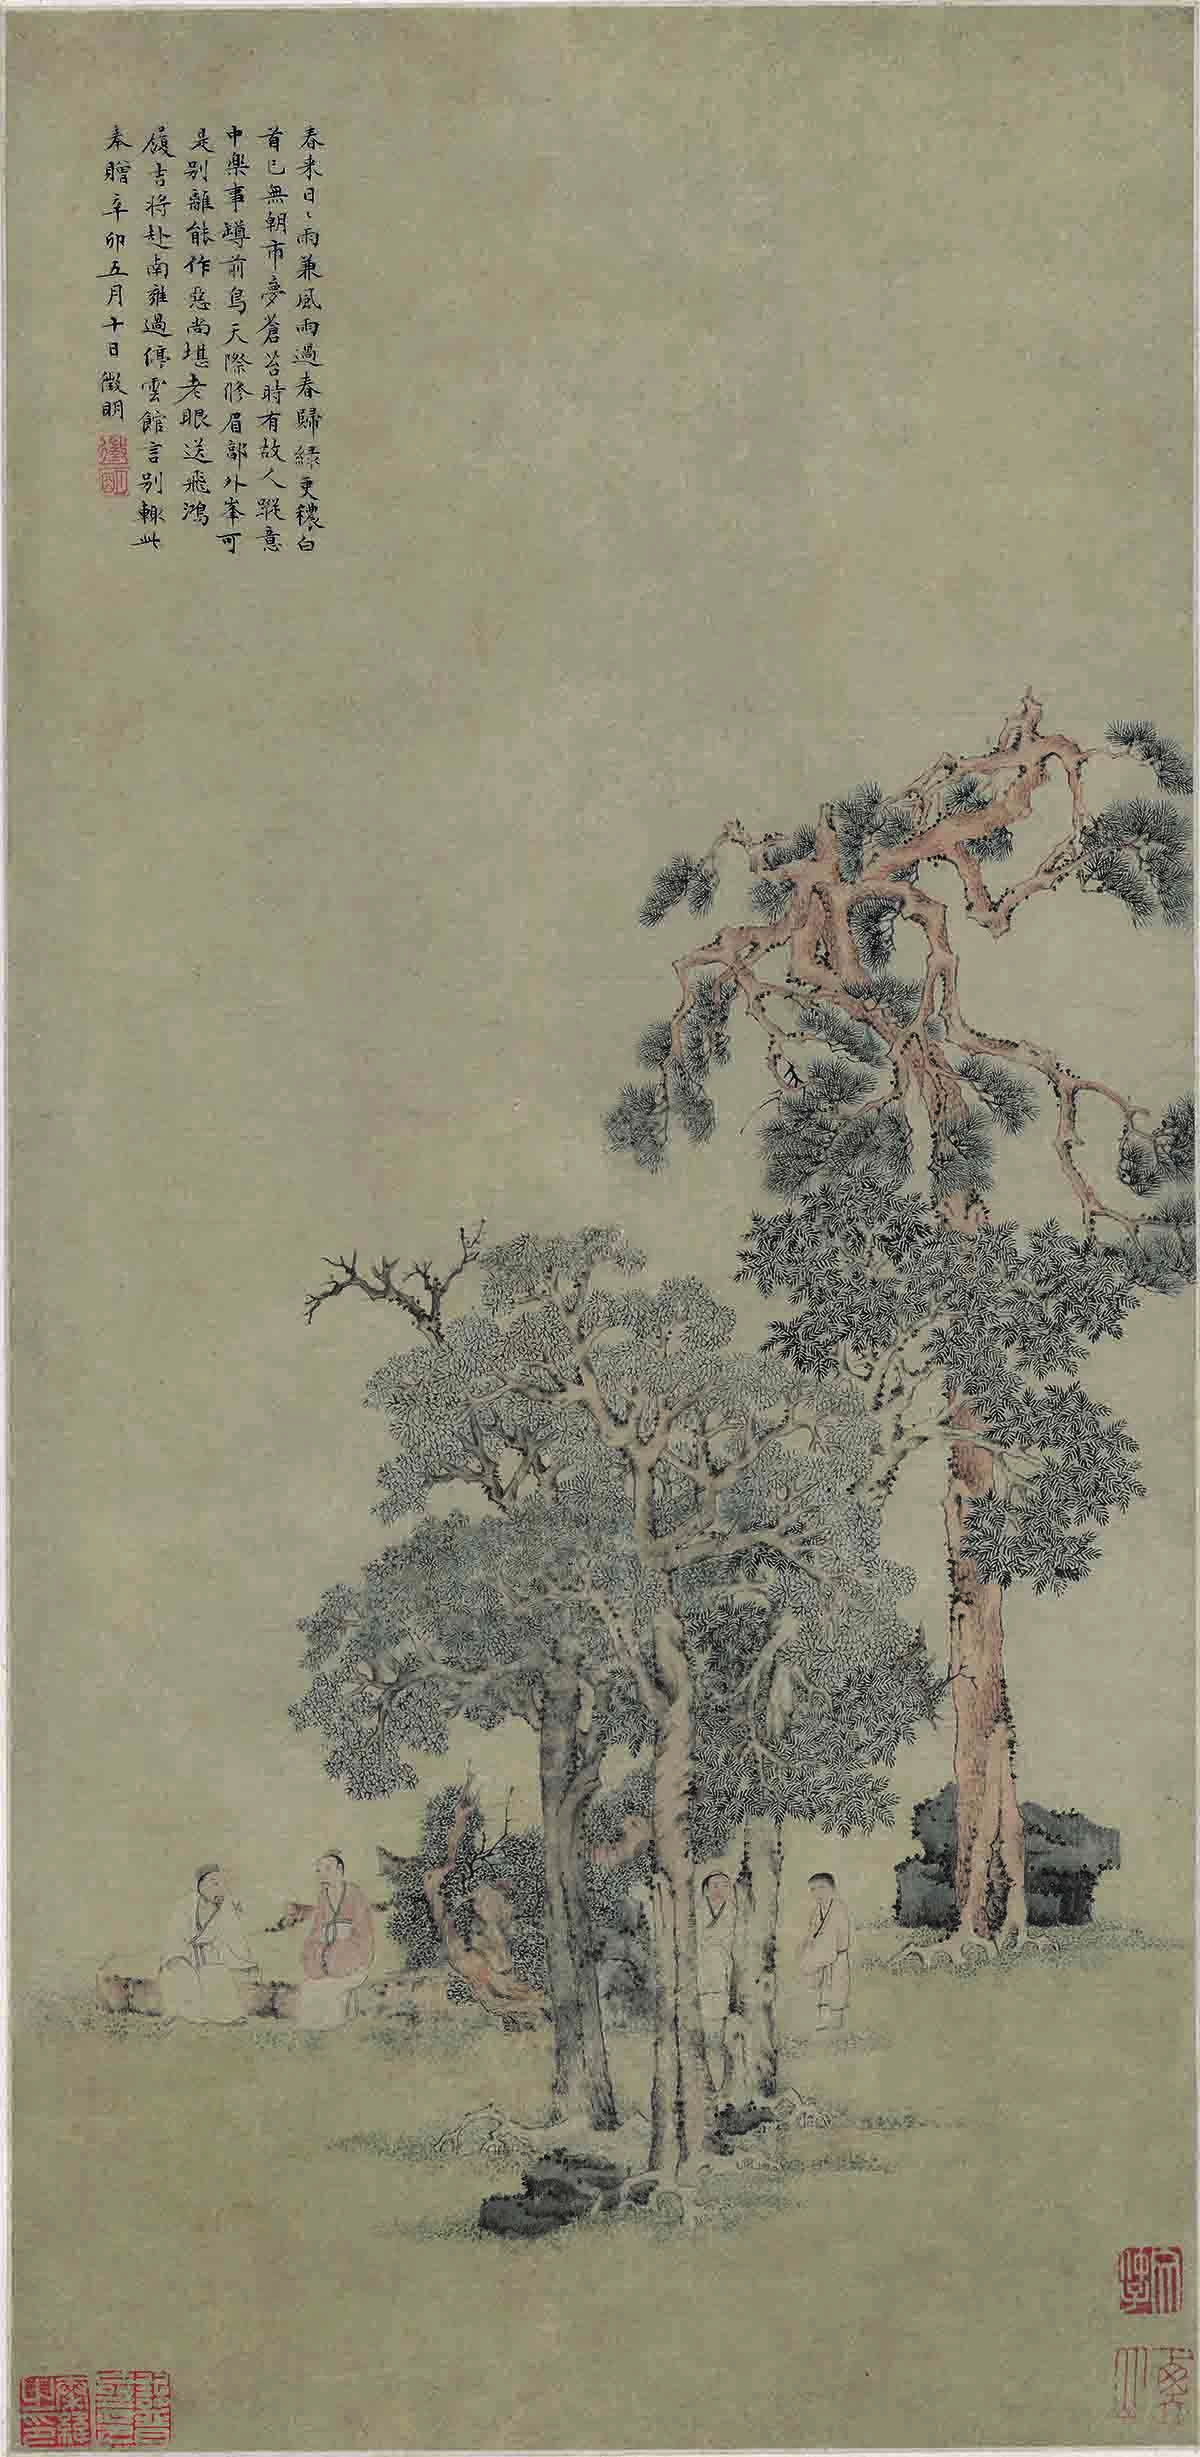 明 文徵明 松石高士图 纸本 29.2x59.8